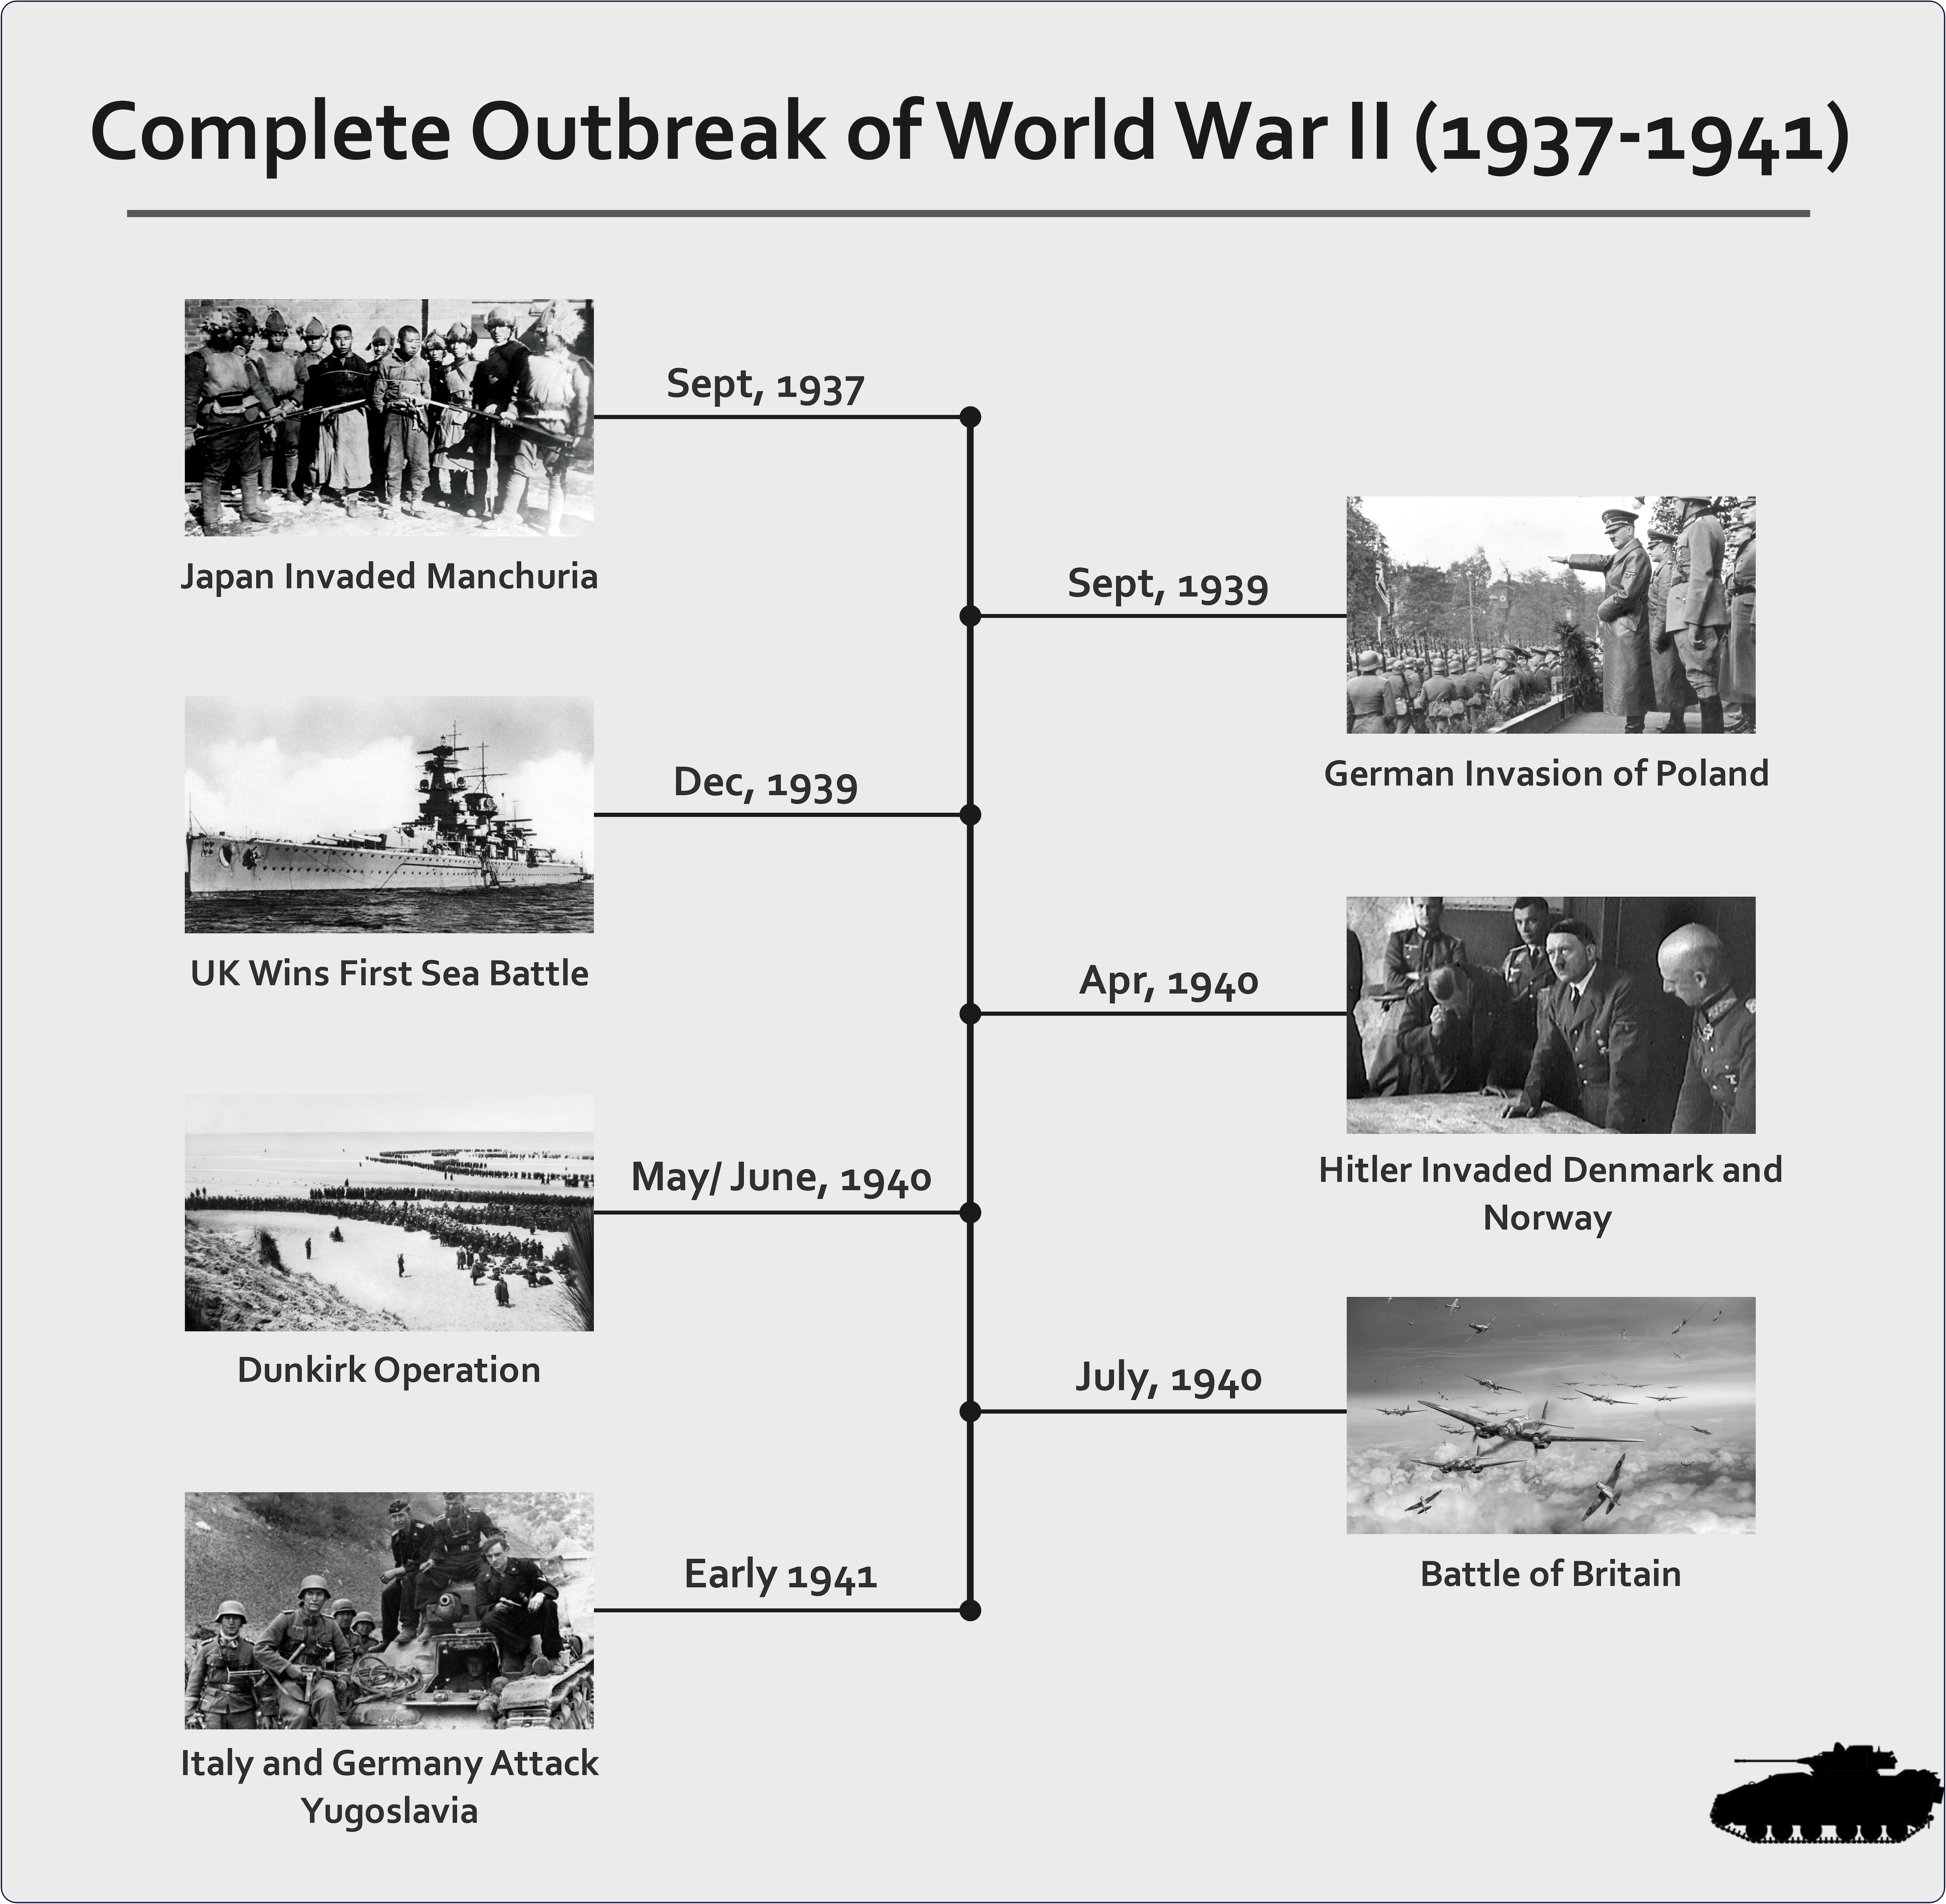 world war two timeline outbreak of world war II